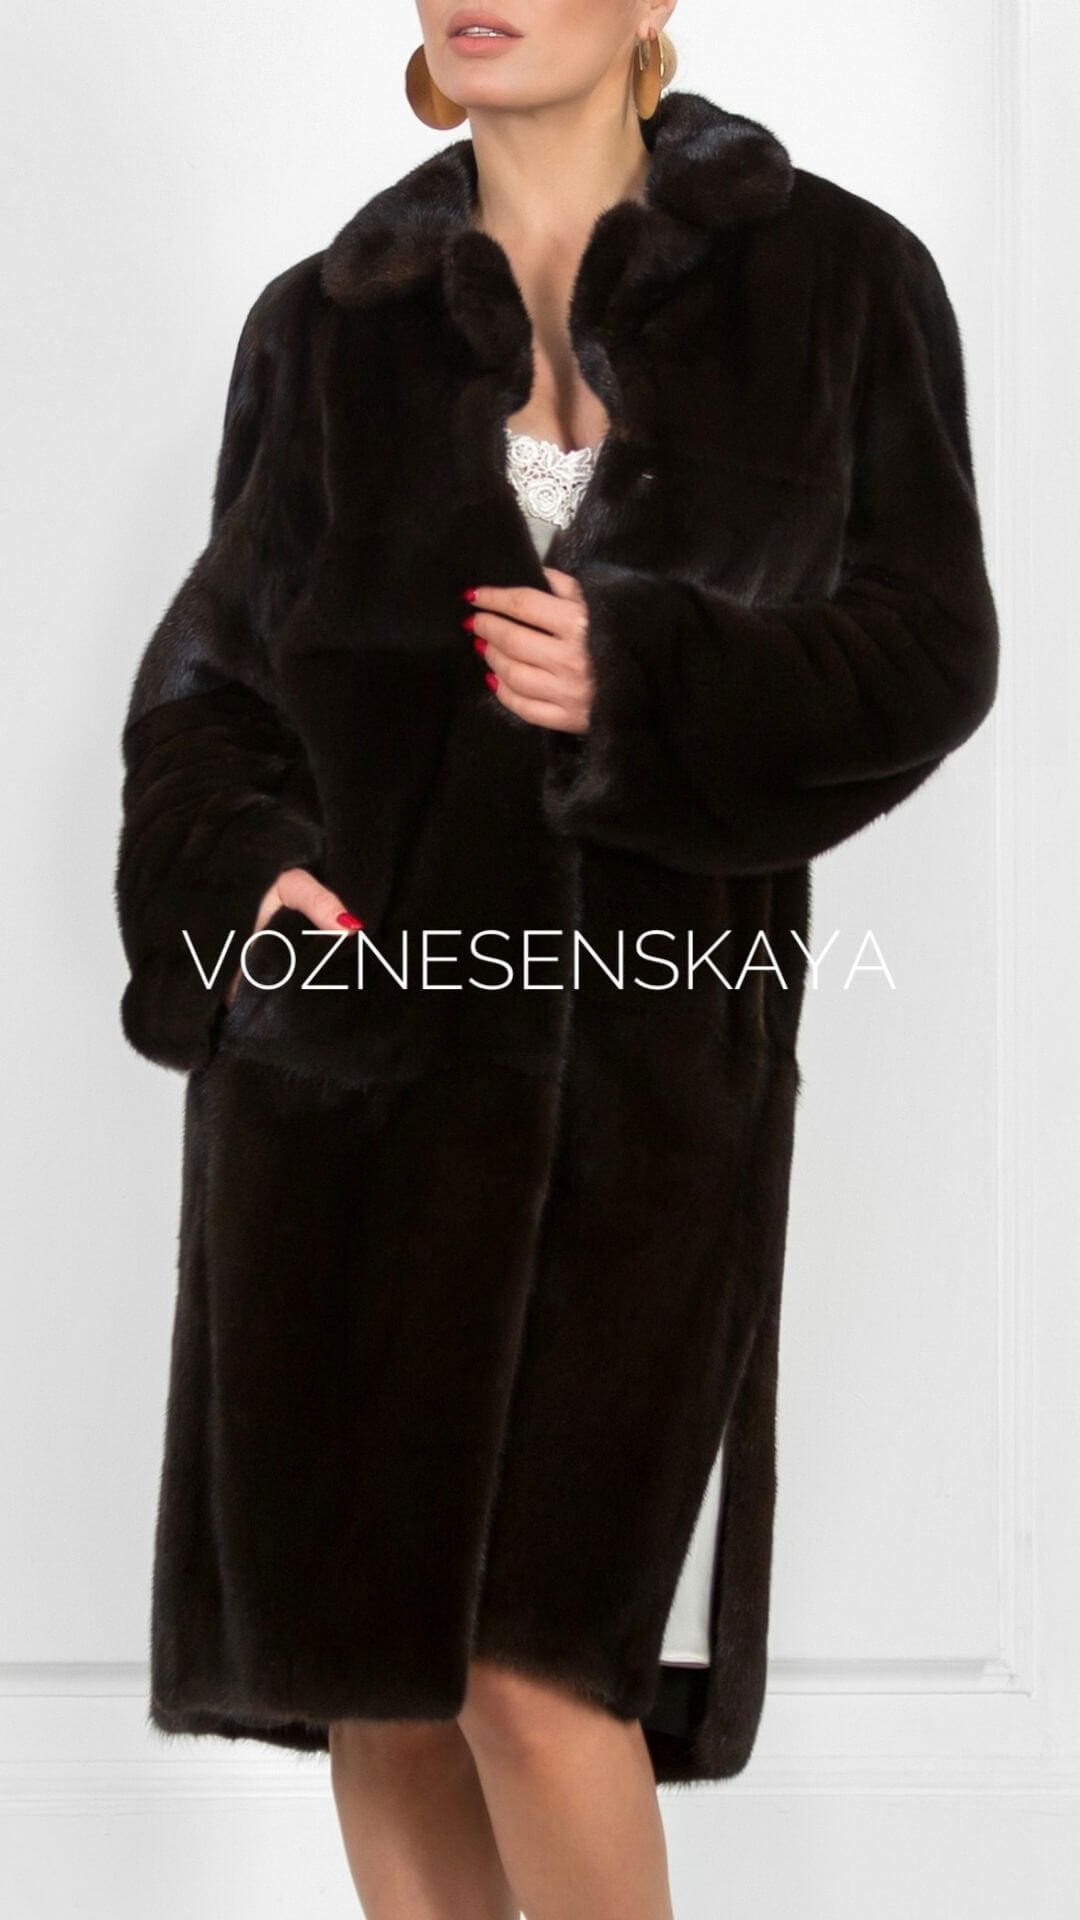 Sew a mink fur coat